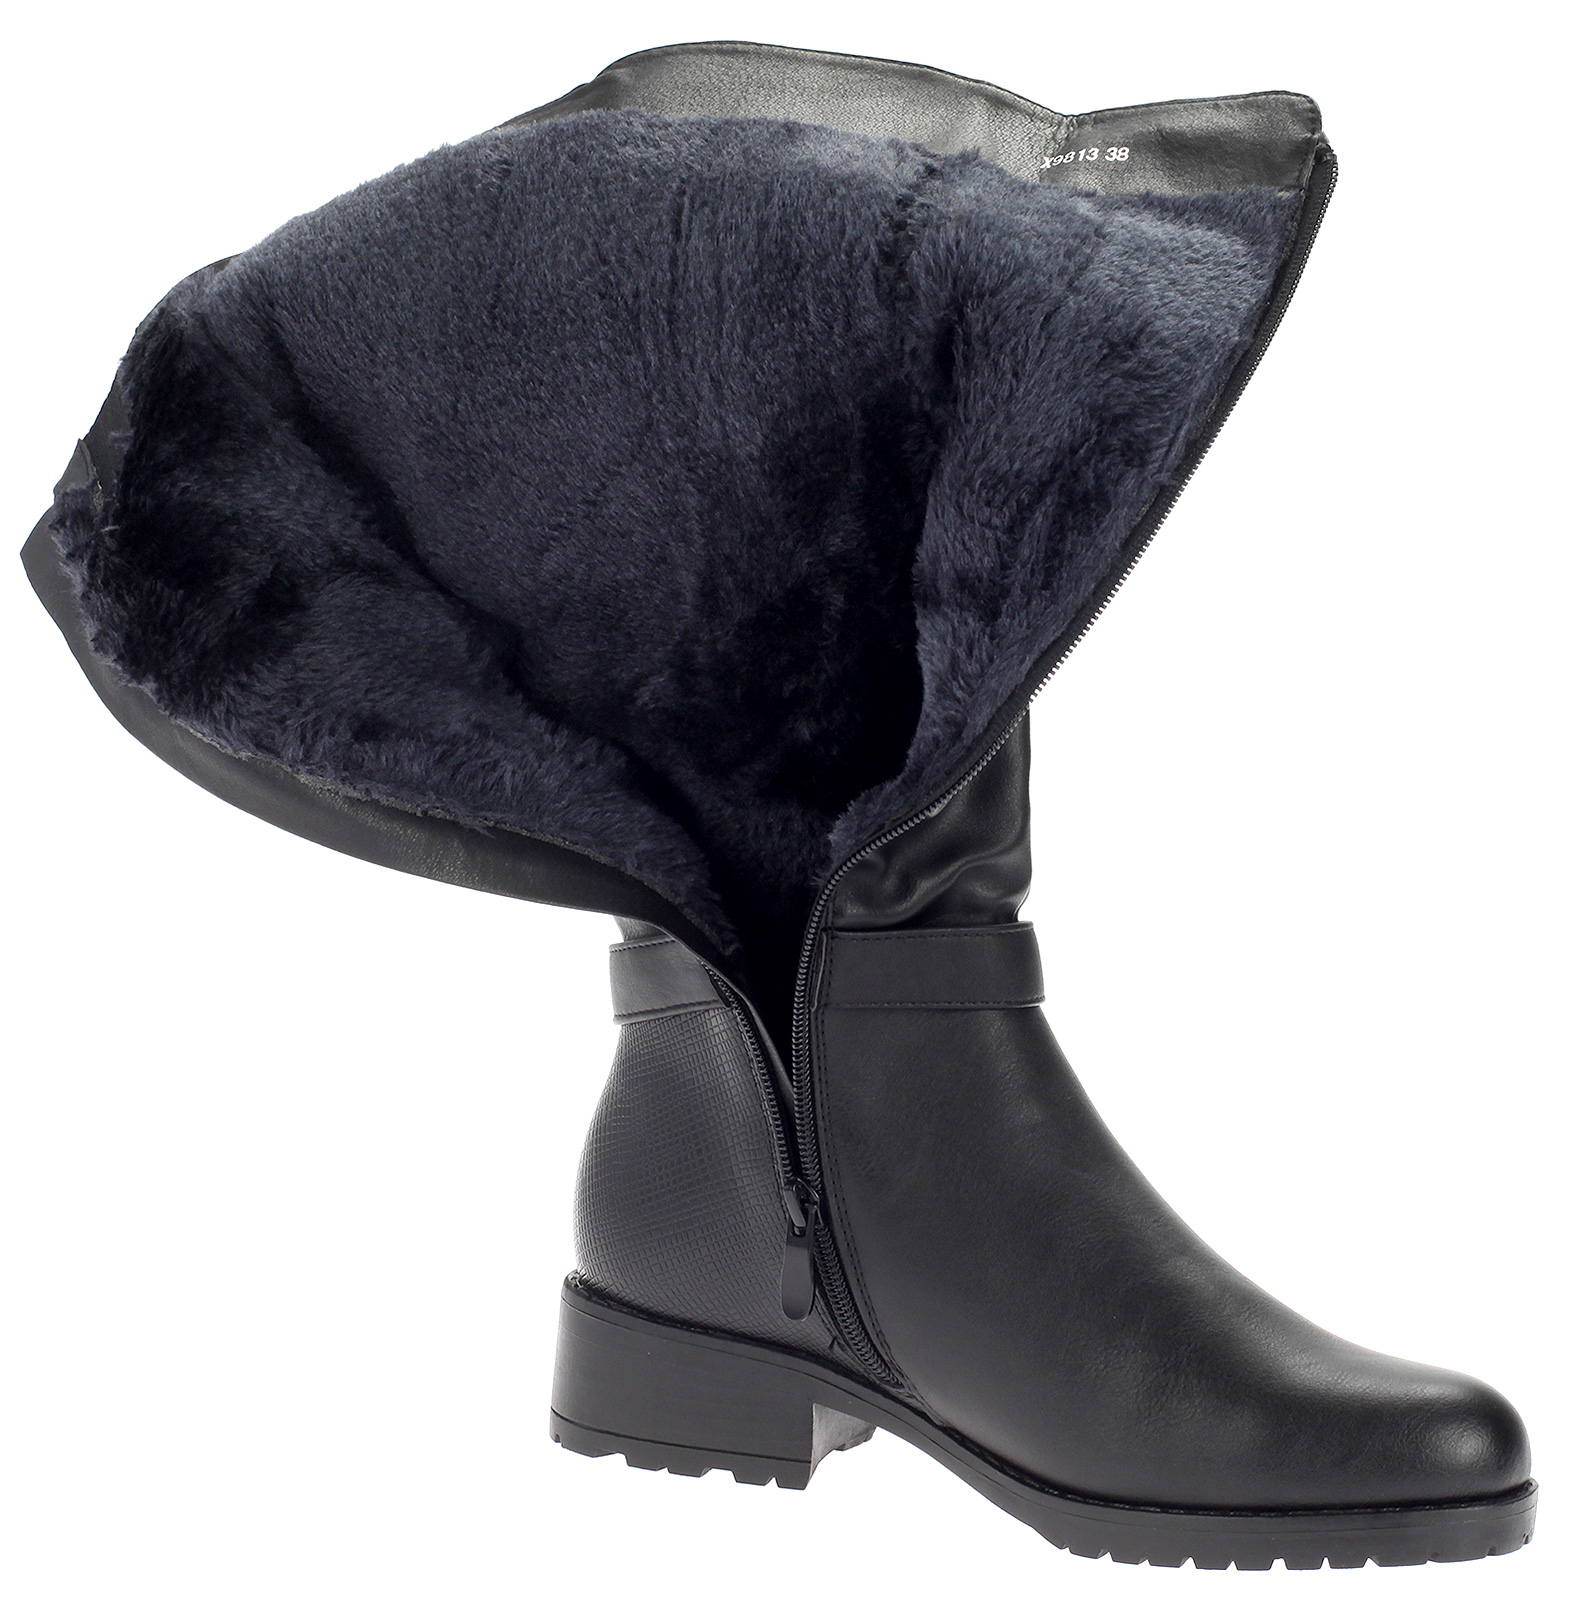 Damen Stiefel Winterstiefel Boot Warm Gefüttert Leder-Optik Schuhe Schwarz X9813-black